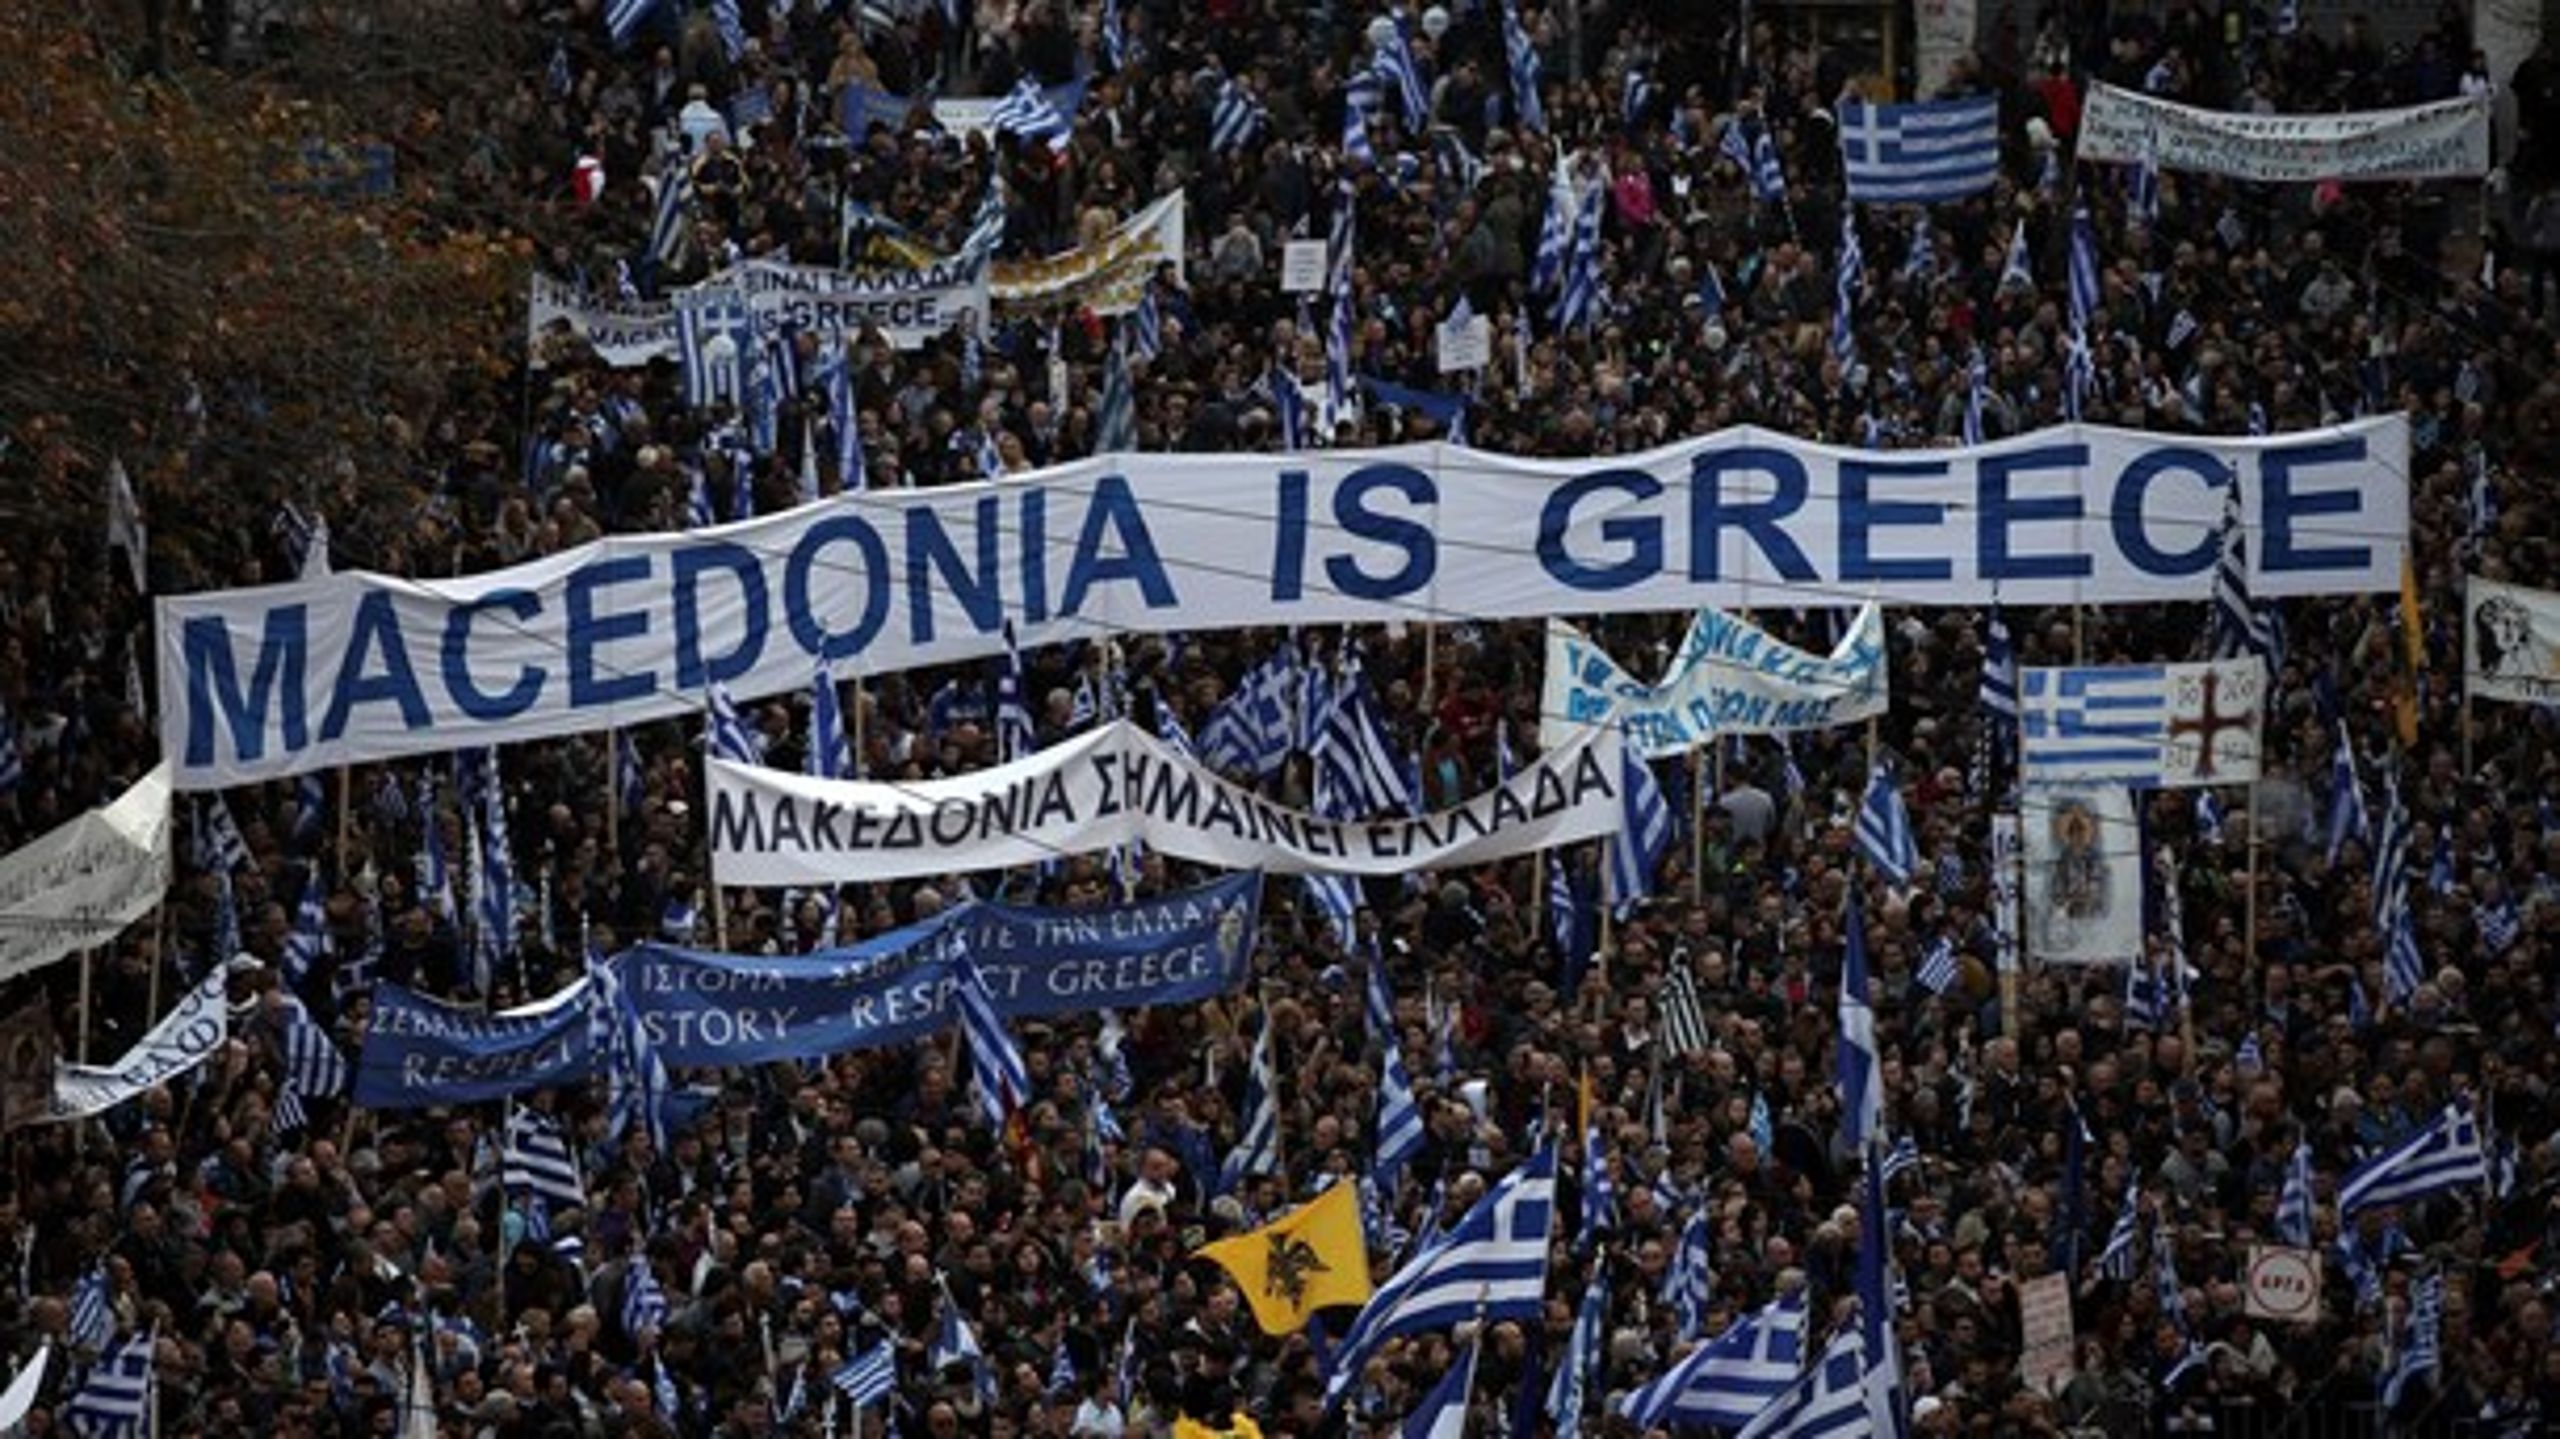 Hvorfor ligger striden mellem Grækenland og Makedonien så dybt i grækernes bevidsthed? Det vender Thomas Lauritzen og Rikke Albrechtsen i ugens podcast.